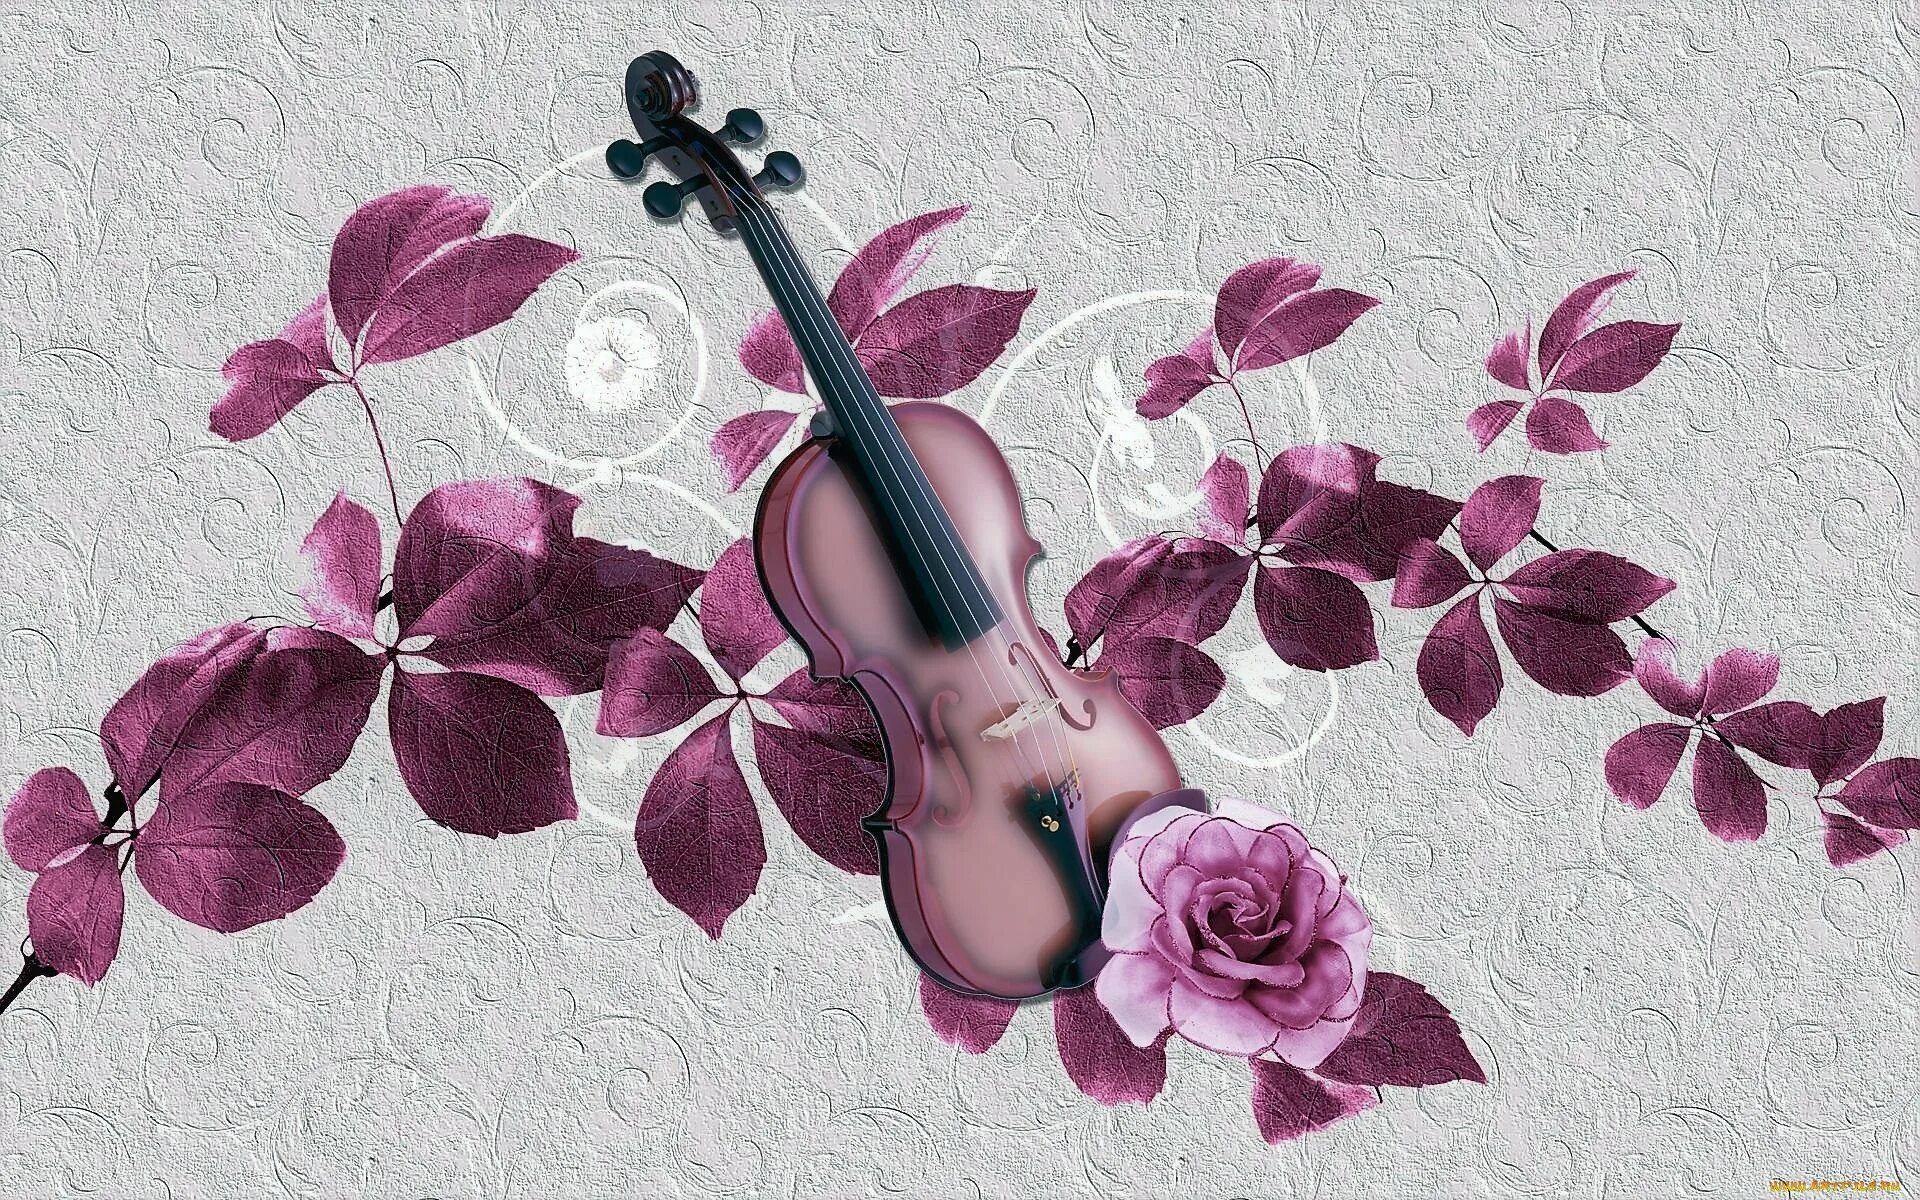 Музыкальные инструменты и цветы. Музыкальный фон. Фотообои музыкальные. Скрипка на фоне цветов. Музыка на фоне песня